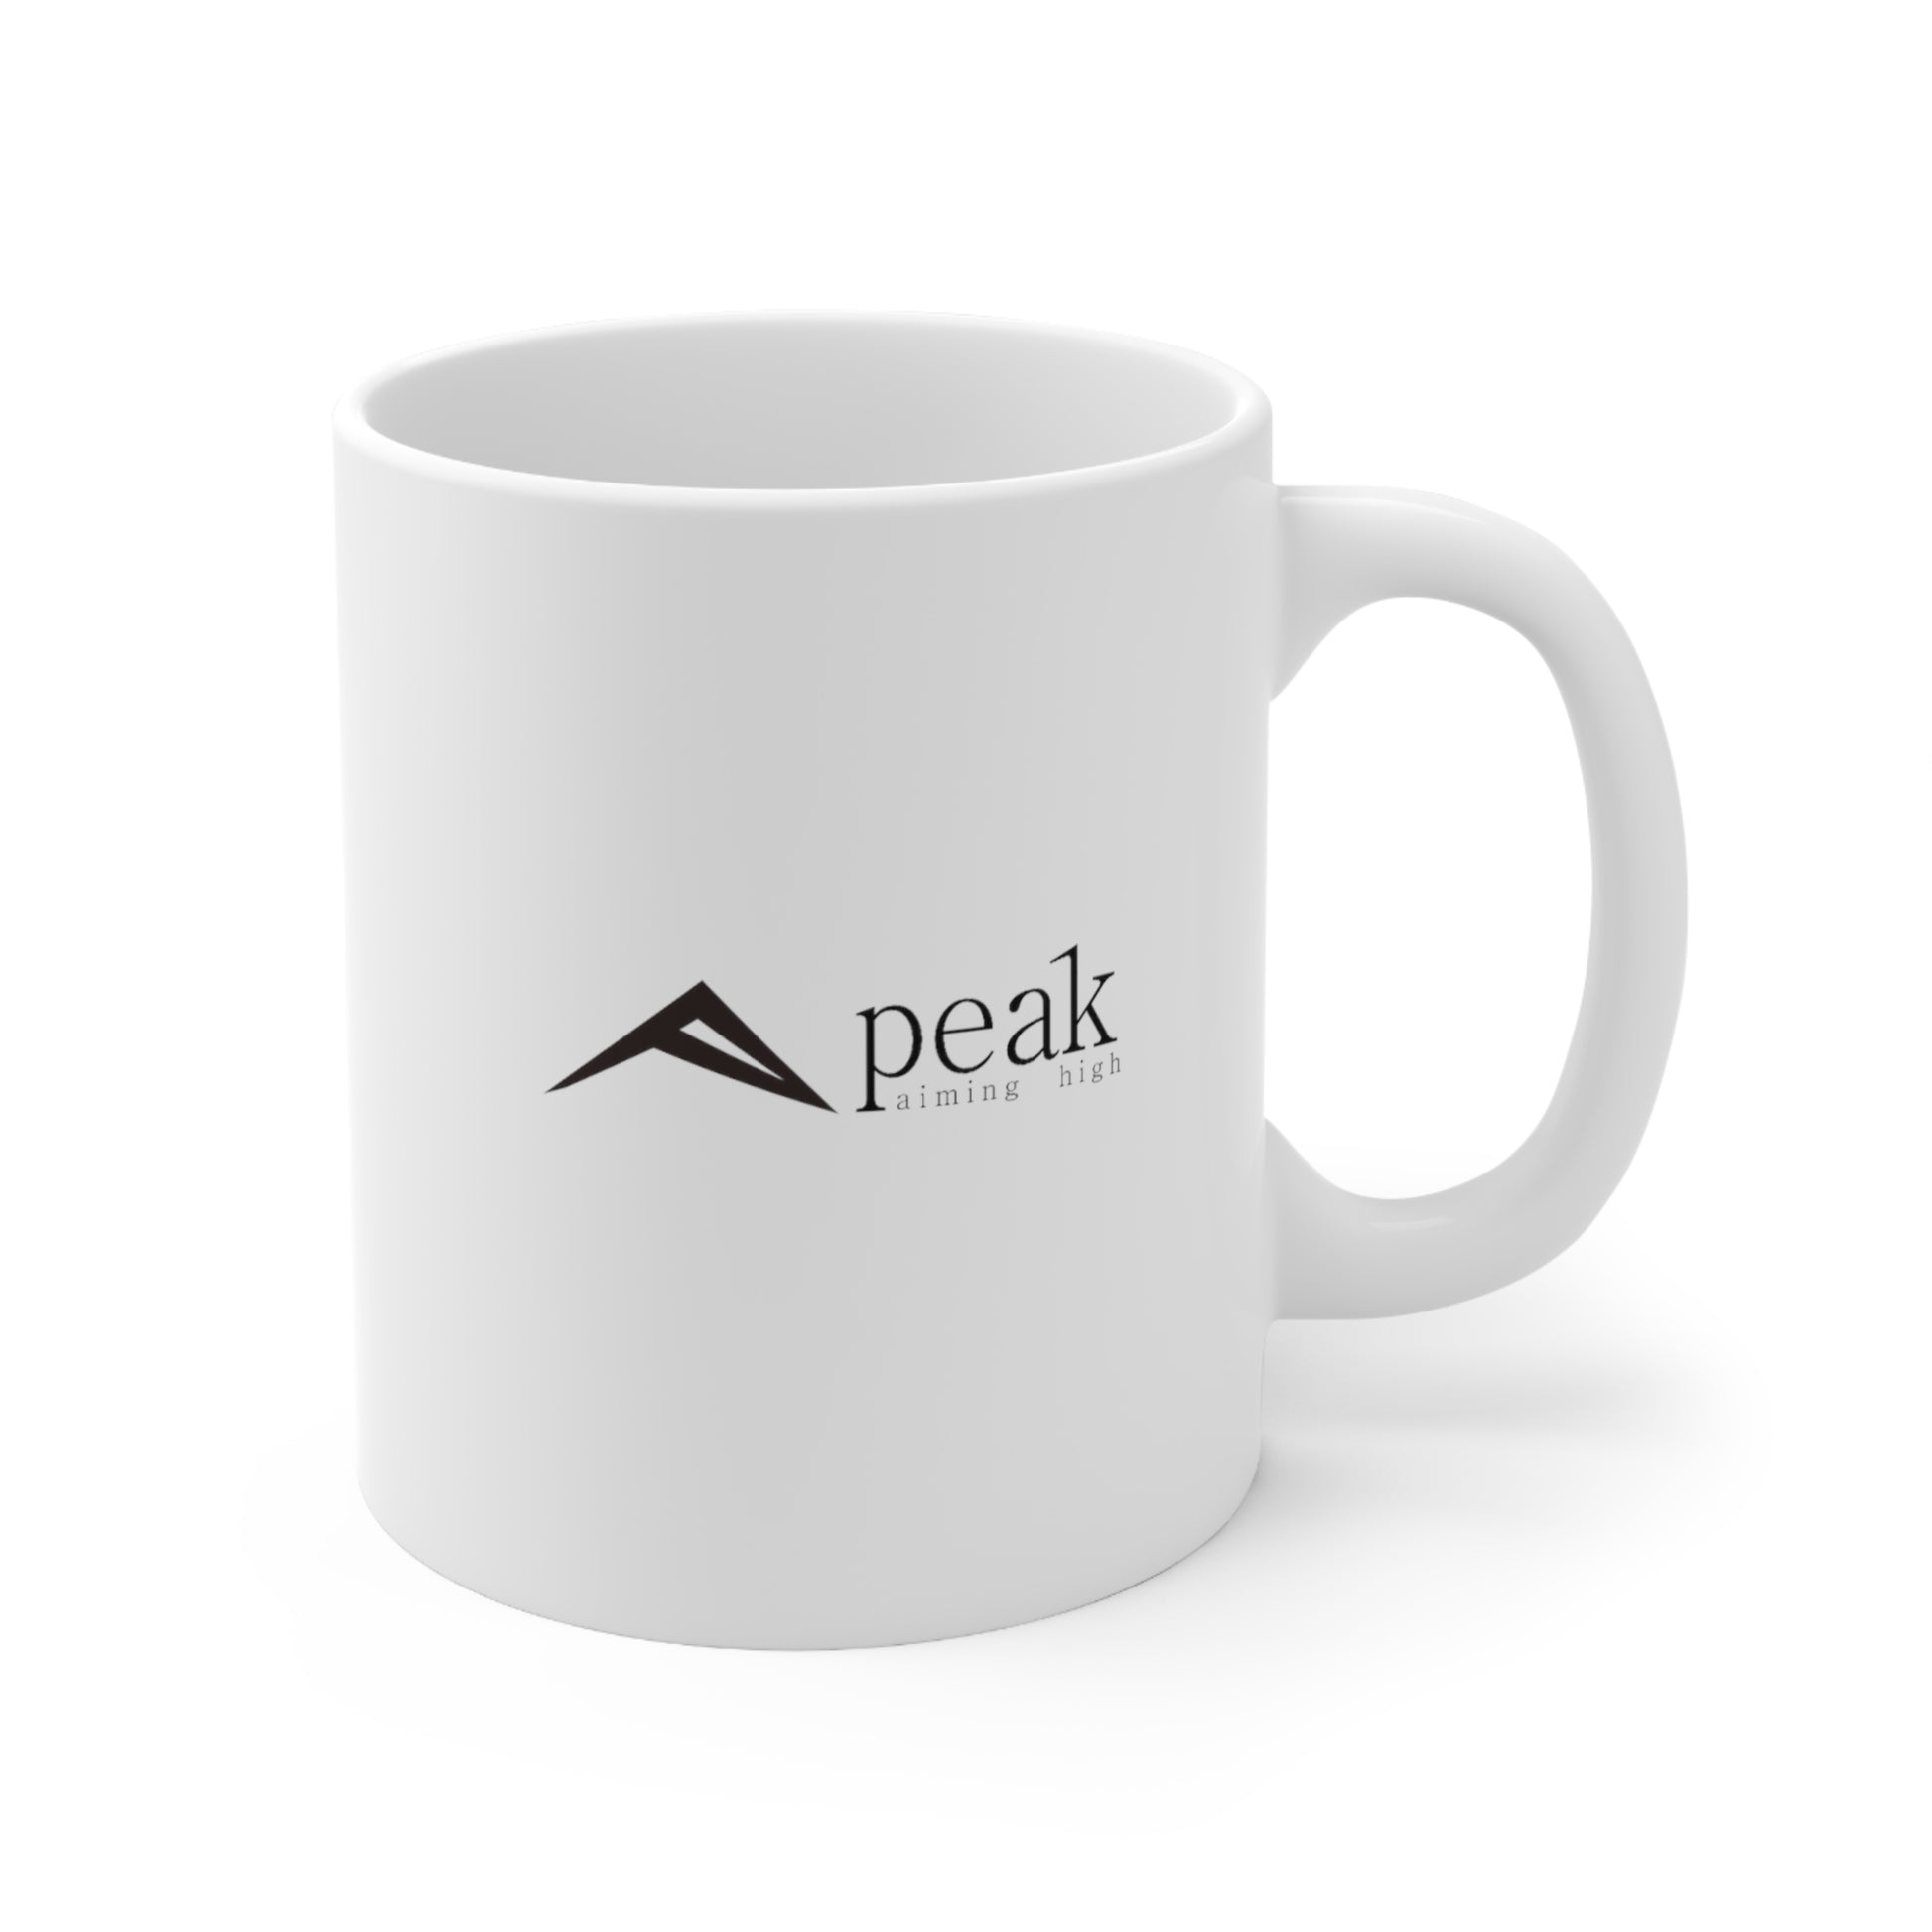 Peak Ceramic Mug